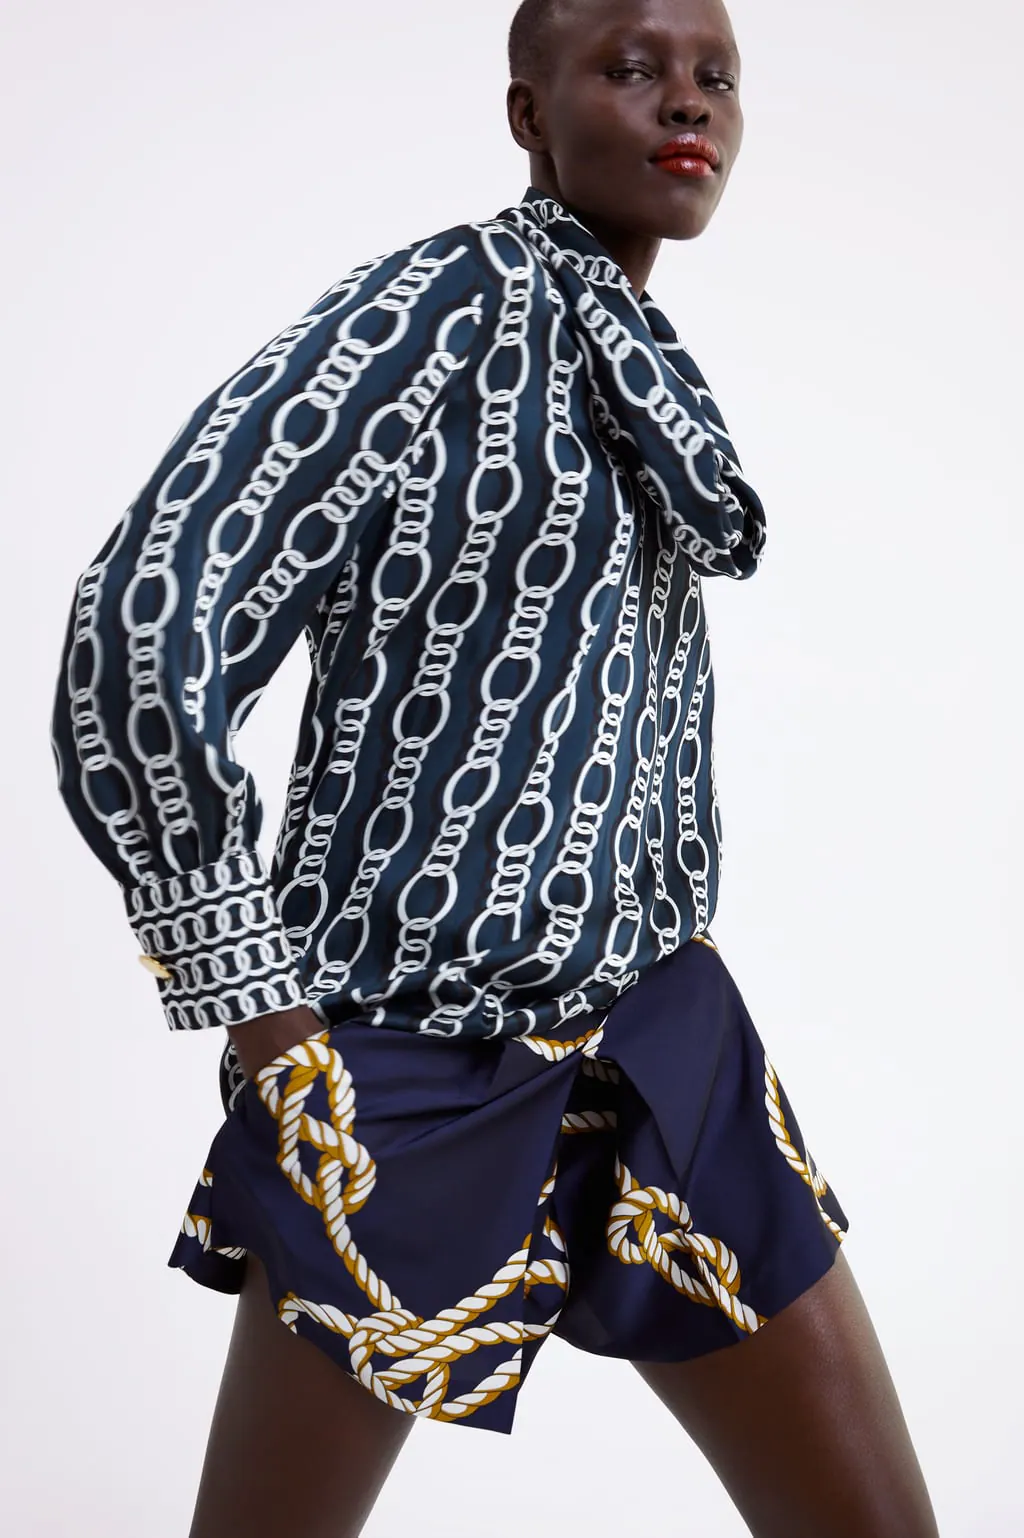 10 blusas low con cadenas para copiar el estilo rompedor de Salamanca | Mujer Hoy